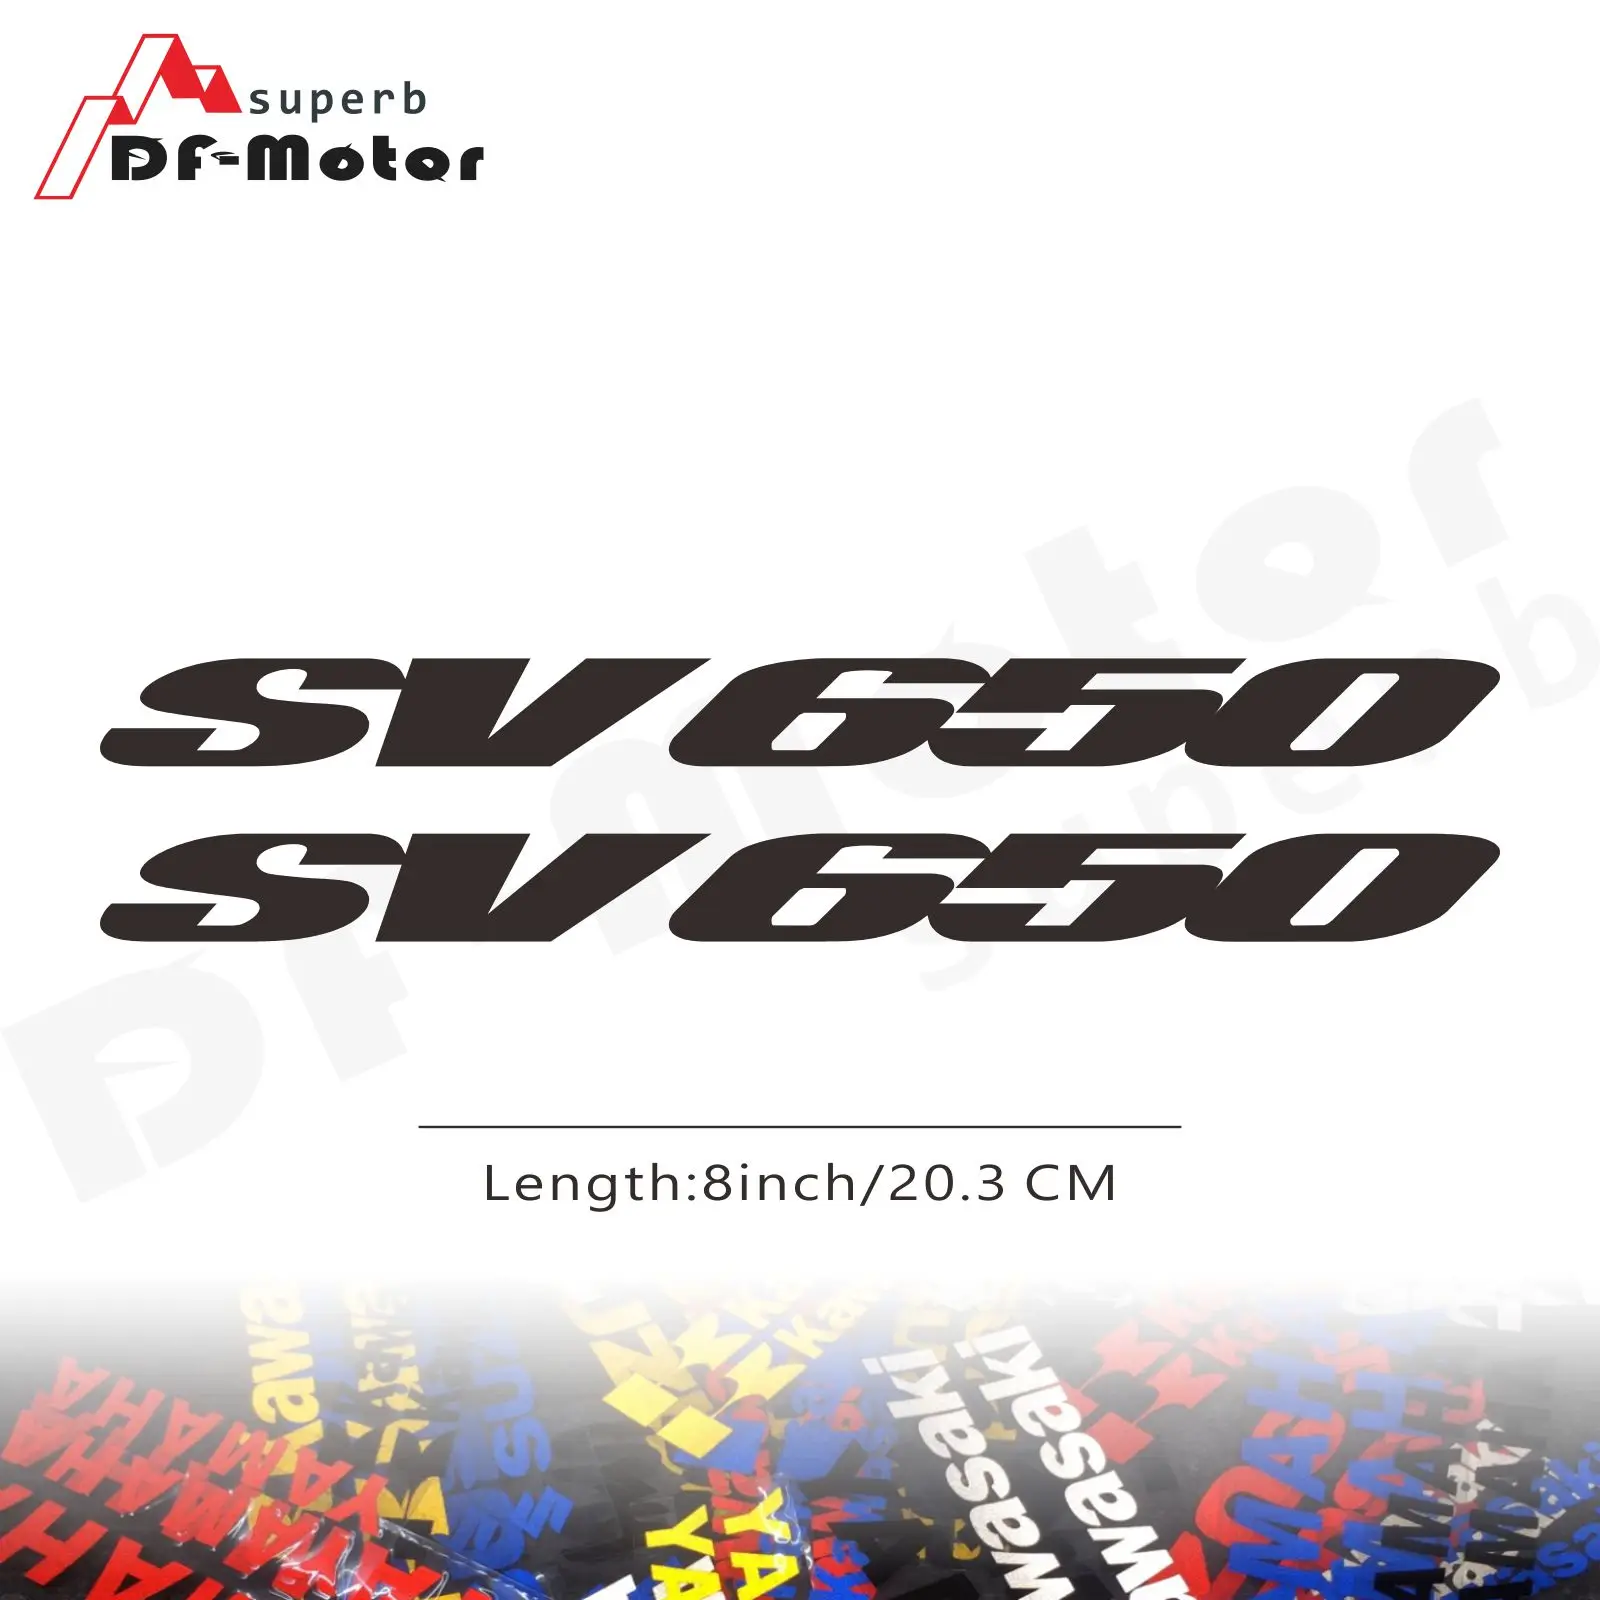 

8Inch Reflective Sticker Decal Motorcycle Car Sticker Wheels Fairing Helmet Sticker Decal For Suzuki Gsxr Sv650